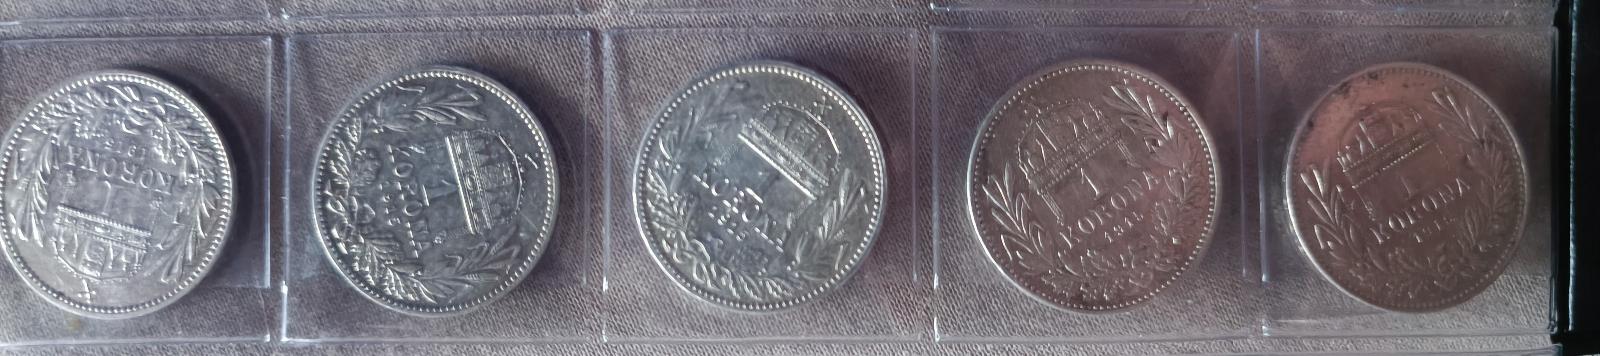 1 Koruna Rakousko Uhersko 20 kusů  - Numismatika